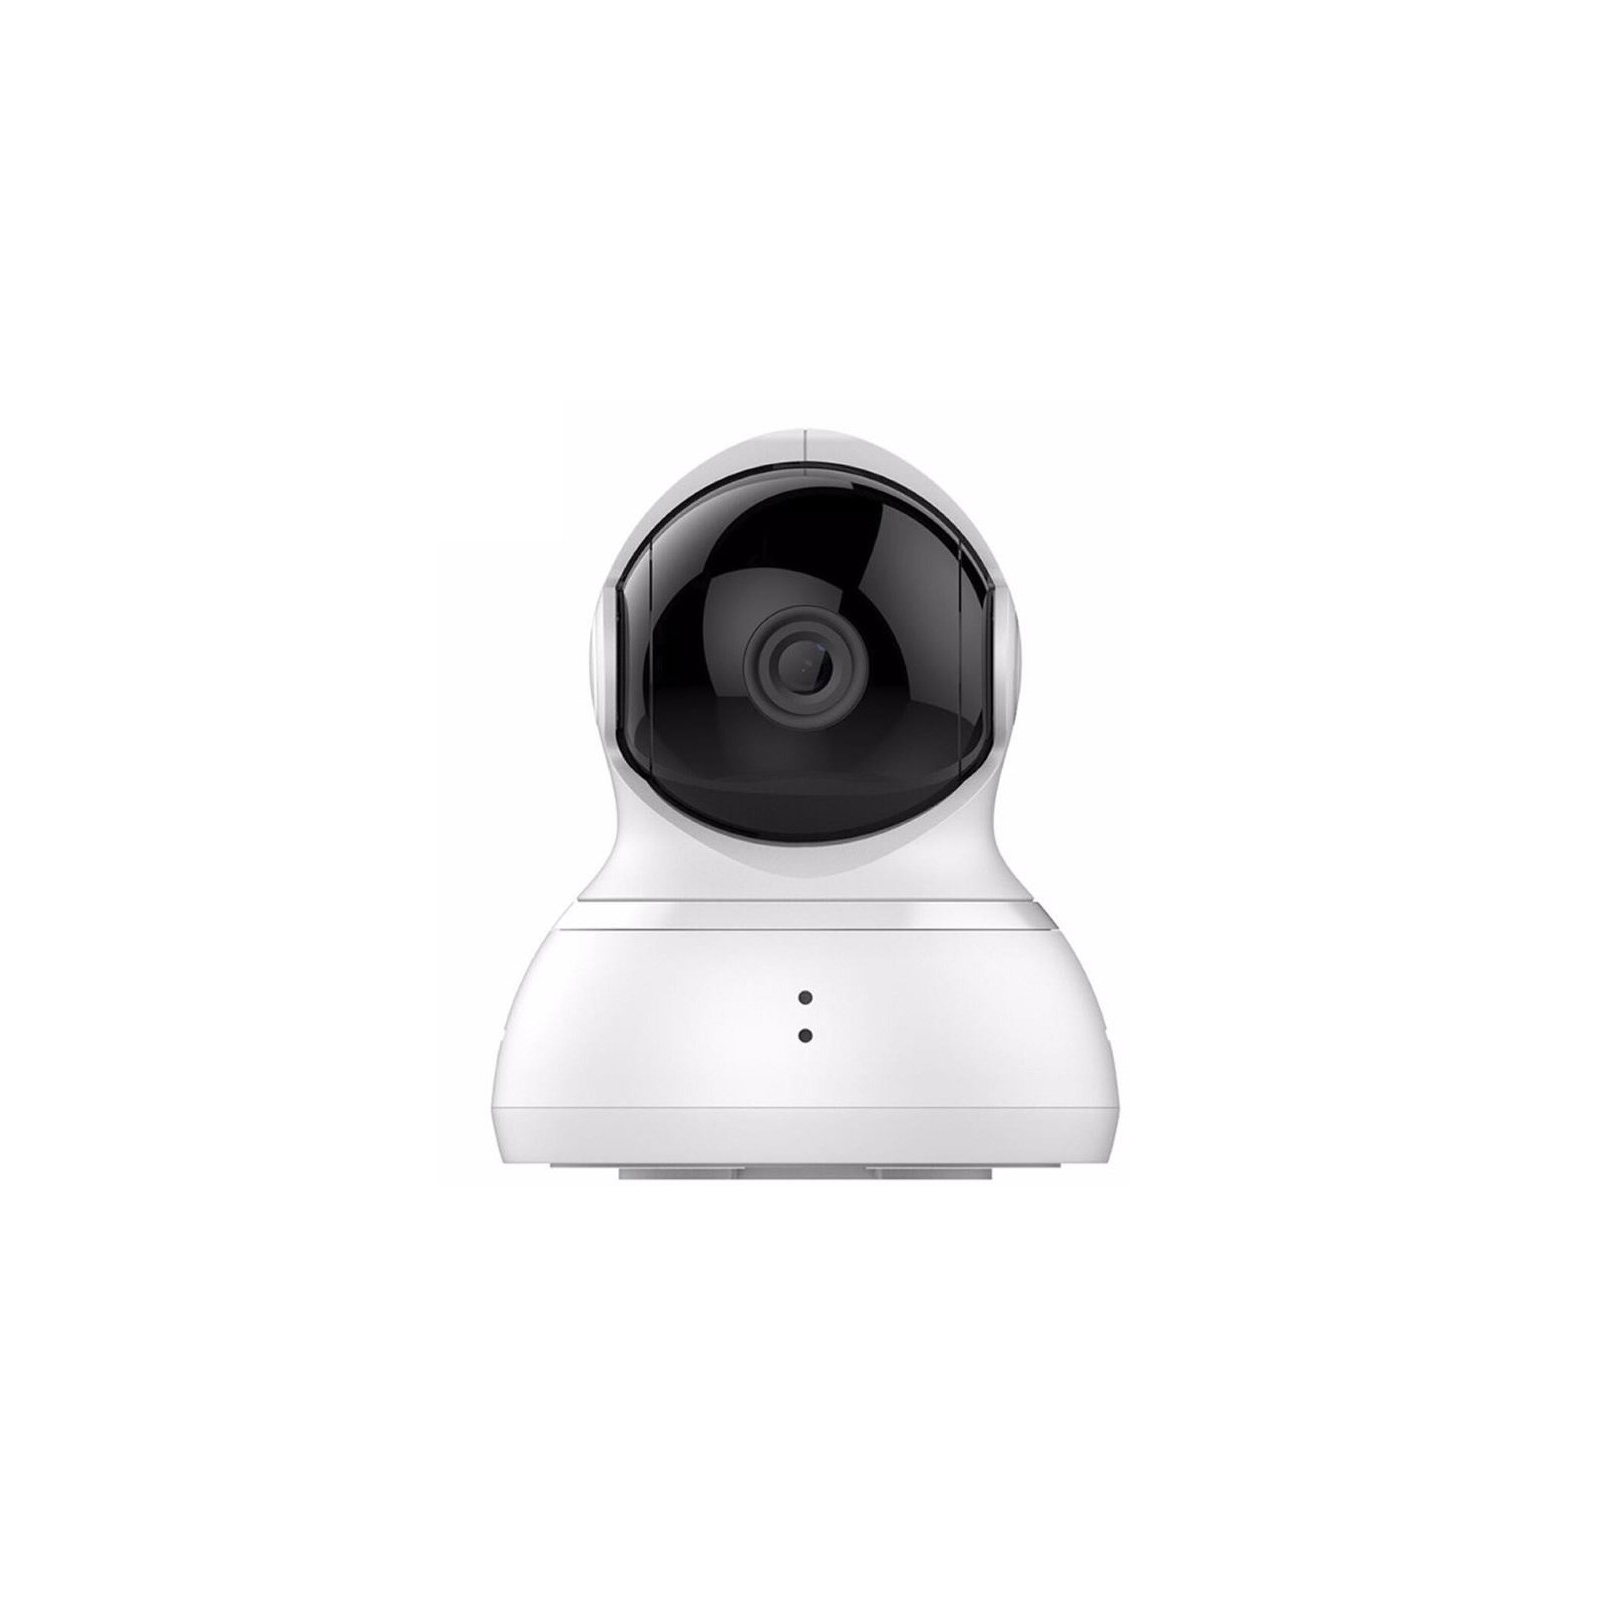 Камера видеонаблюдения Xiaomi Yi Dome Home 360° 720P (Международная версия) (93002) изображение 2